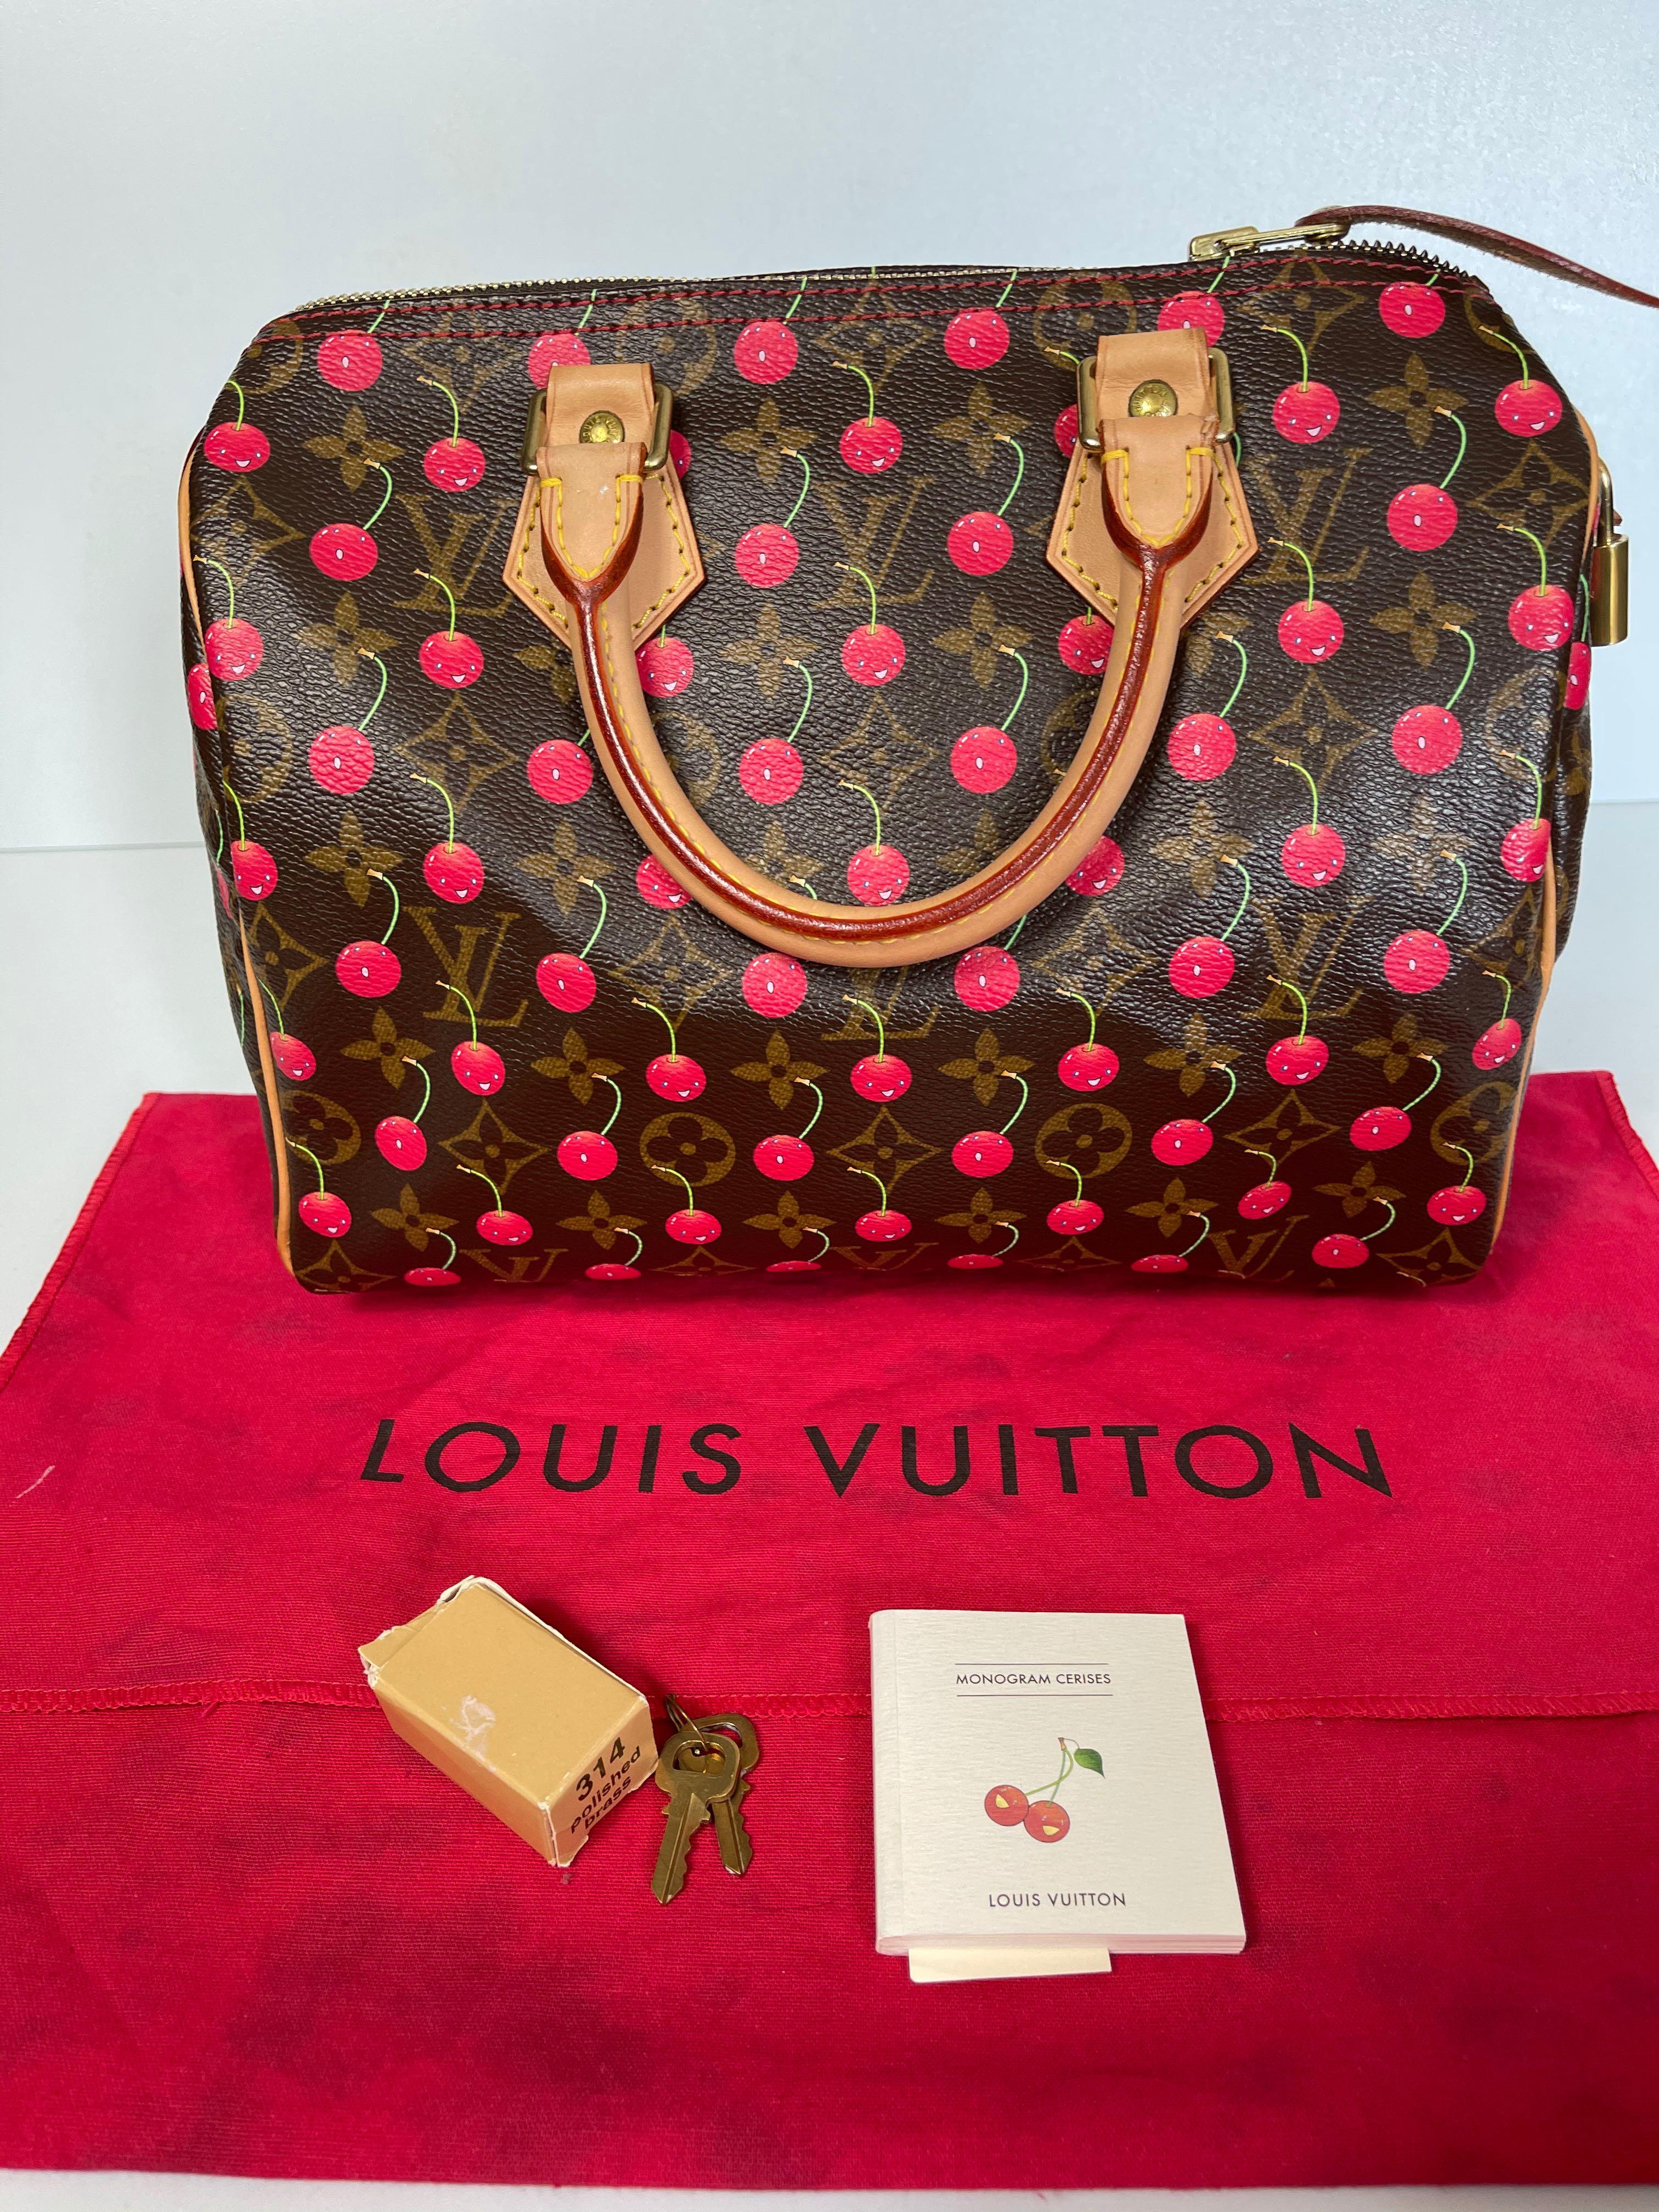 Louis Vuitton cerise speedy 25 review/ unboxing 